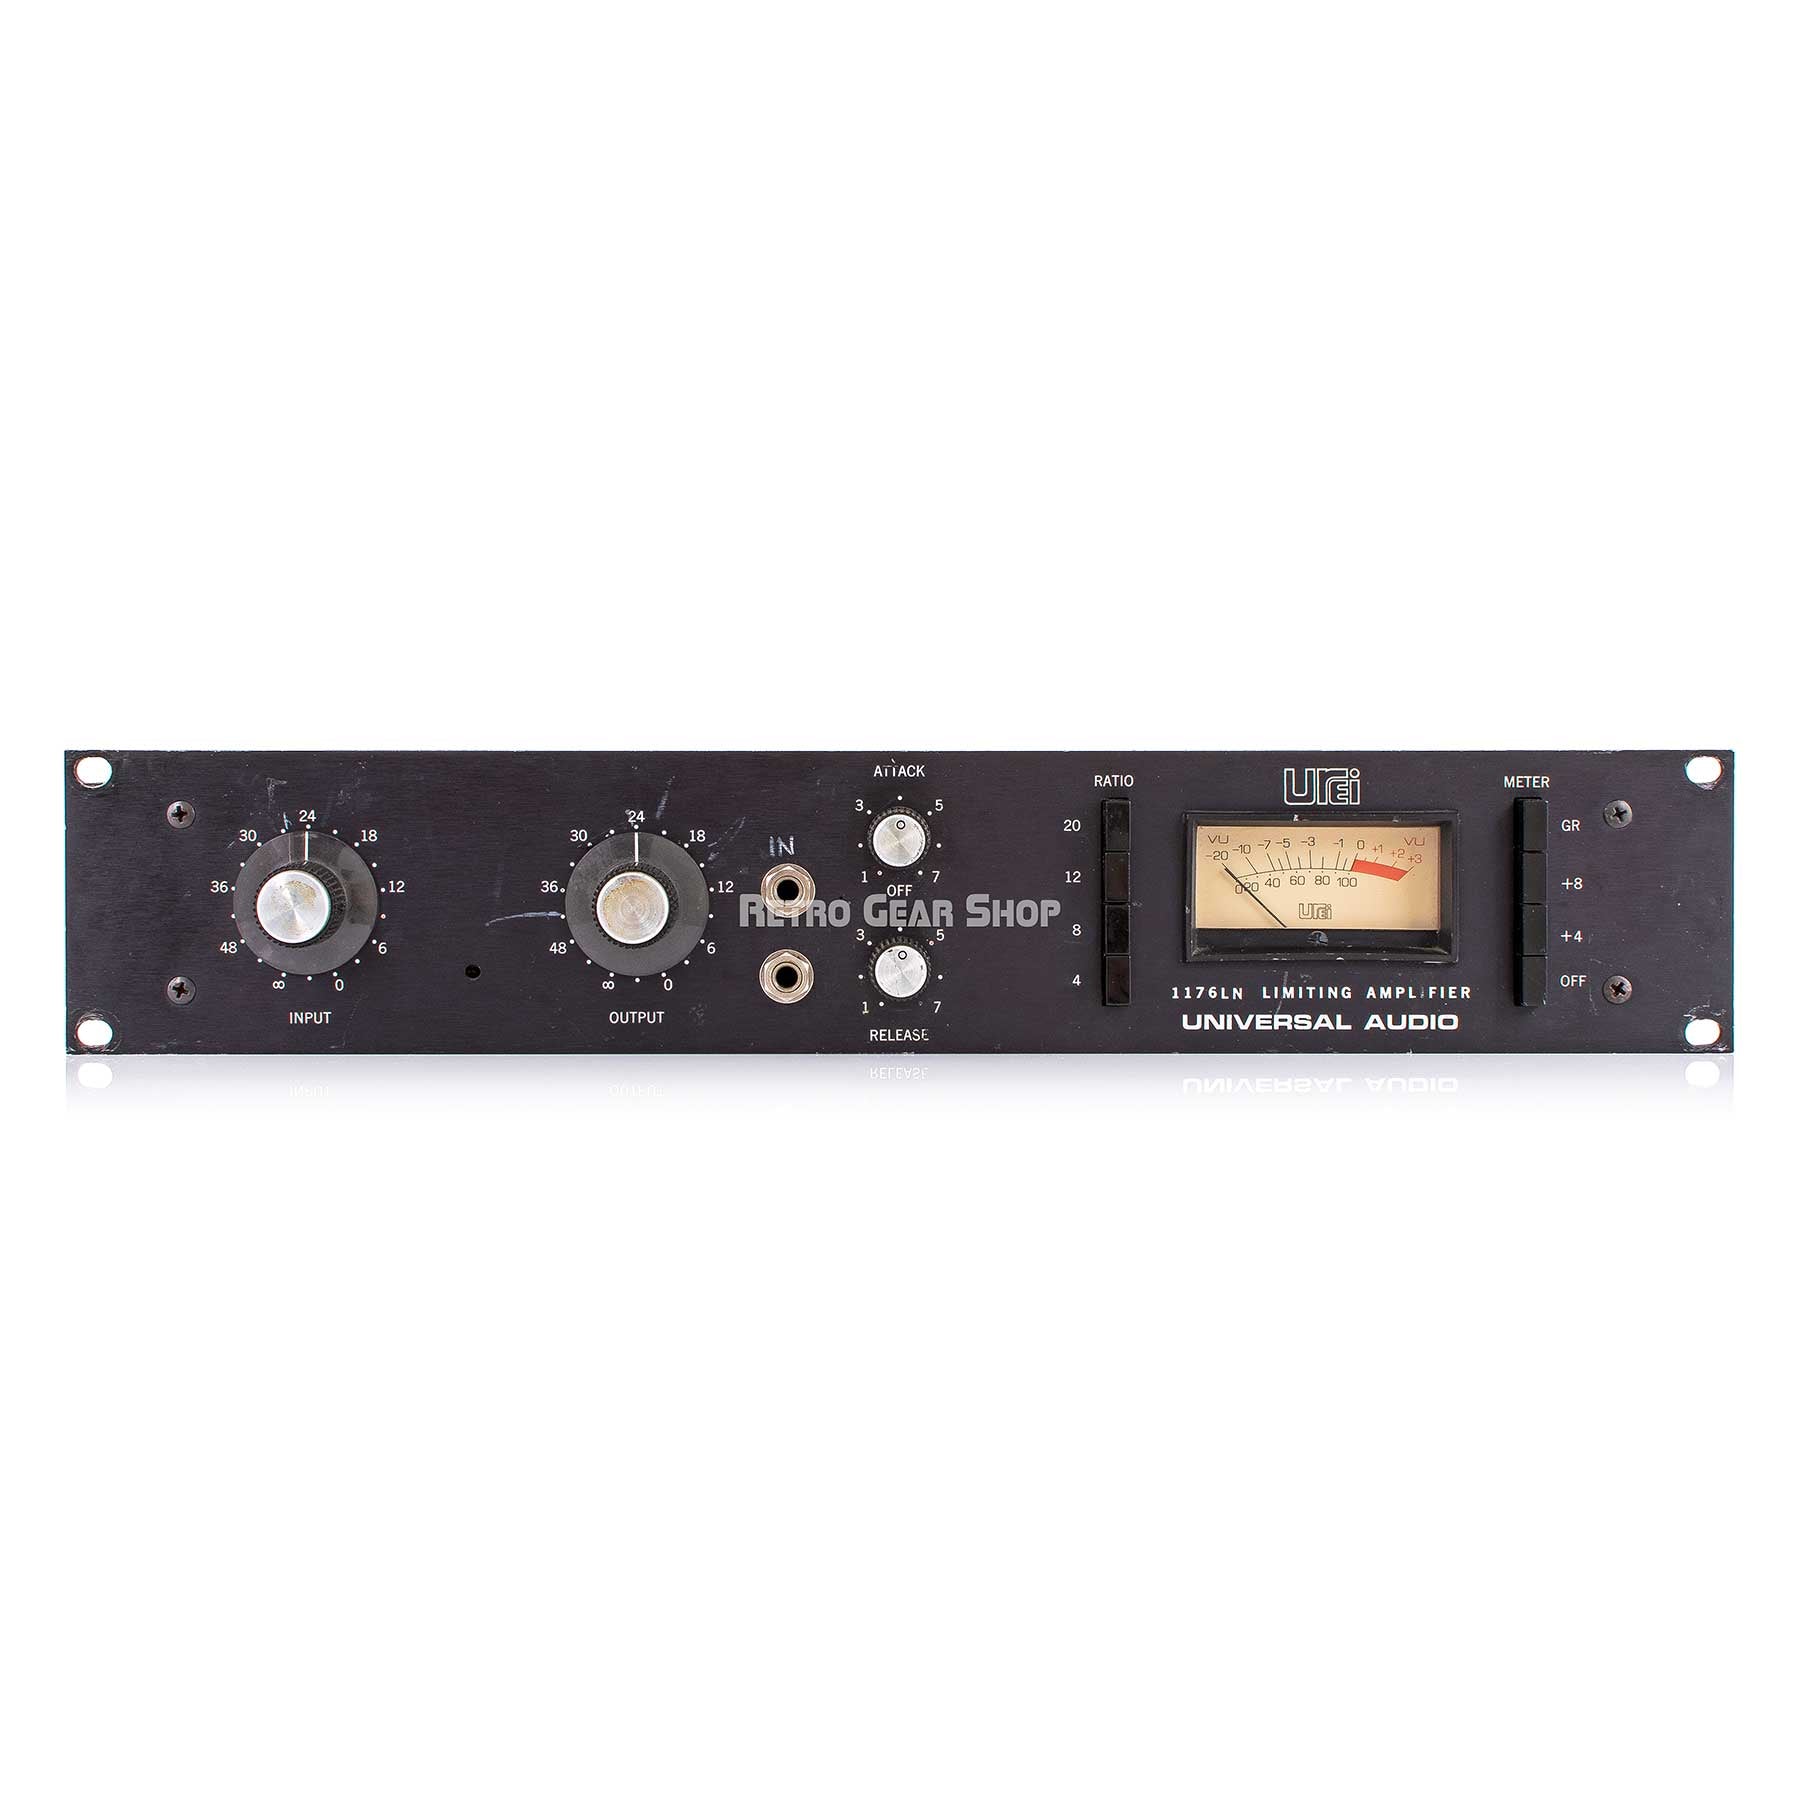 Urei Universal Audio 1176LN Limiting Amplifier Rev D Rare Vintage 